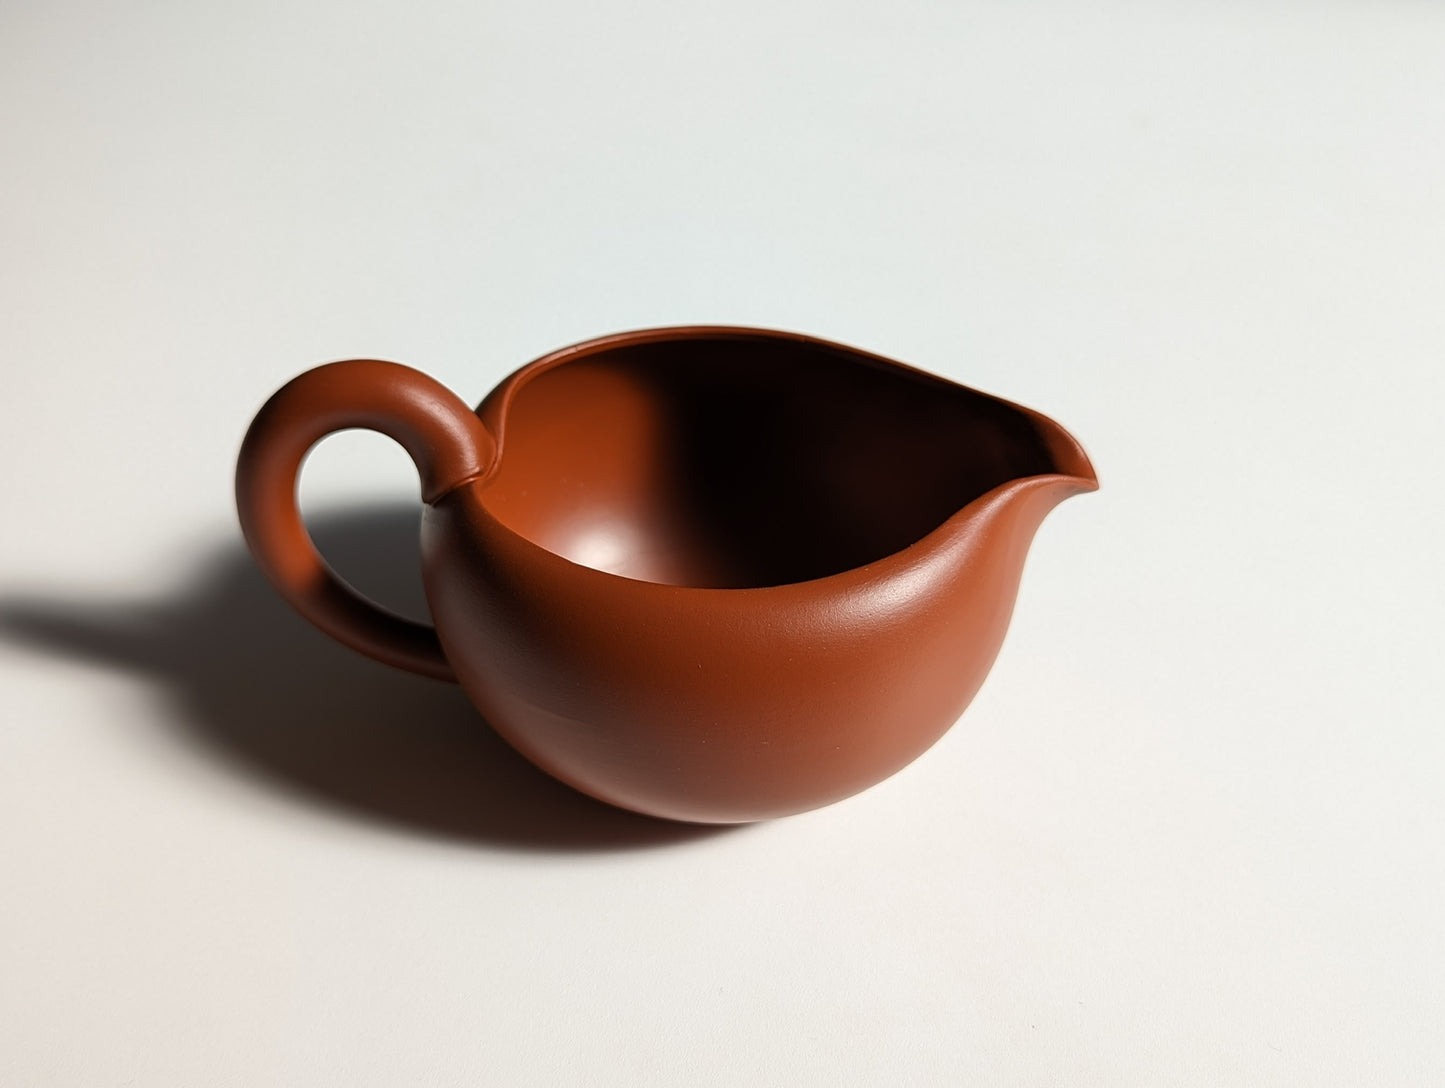 Yuzamashi  (water cooler) Tokoname stone ware by Takasuke (reddish brown, about 200ml)